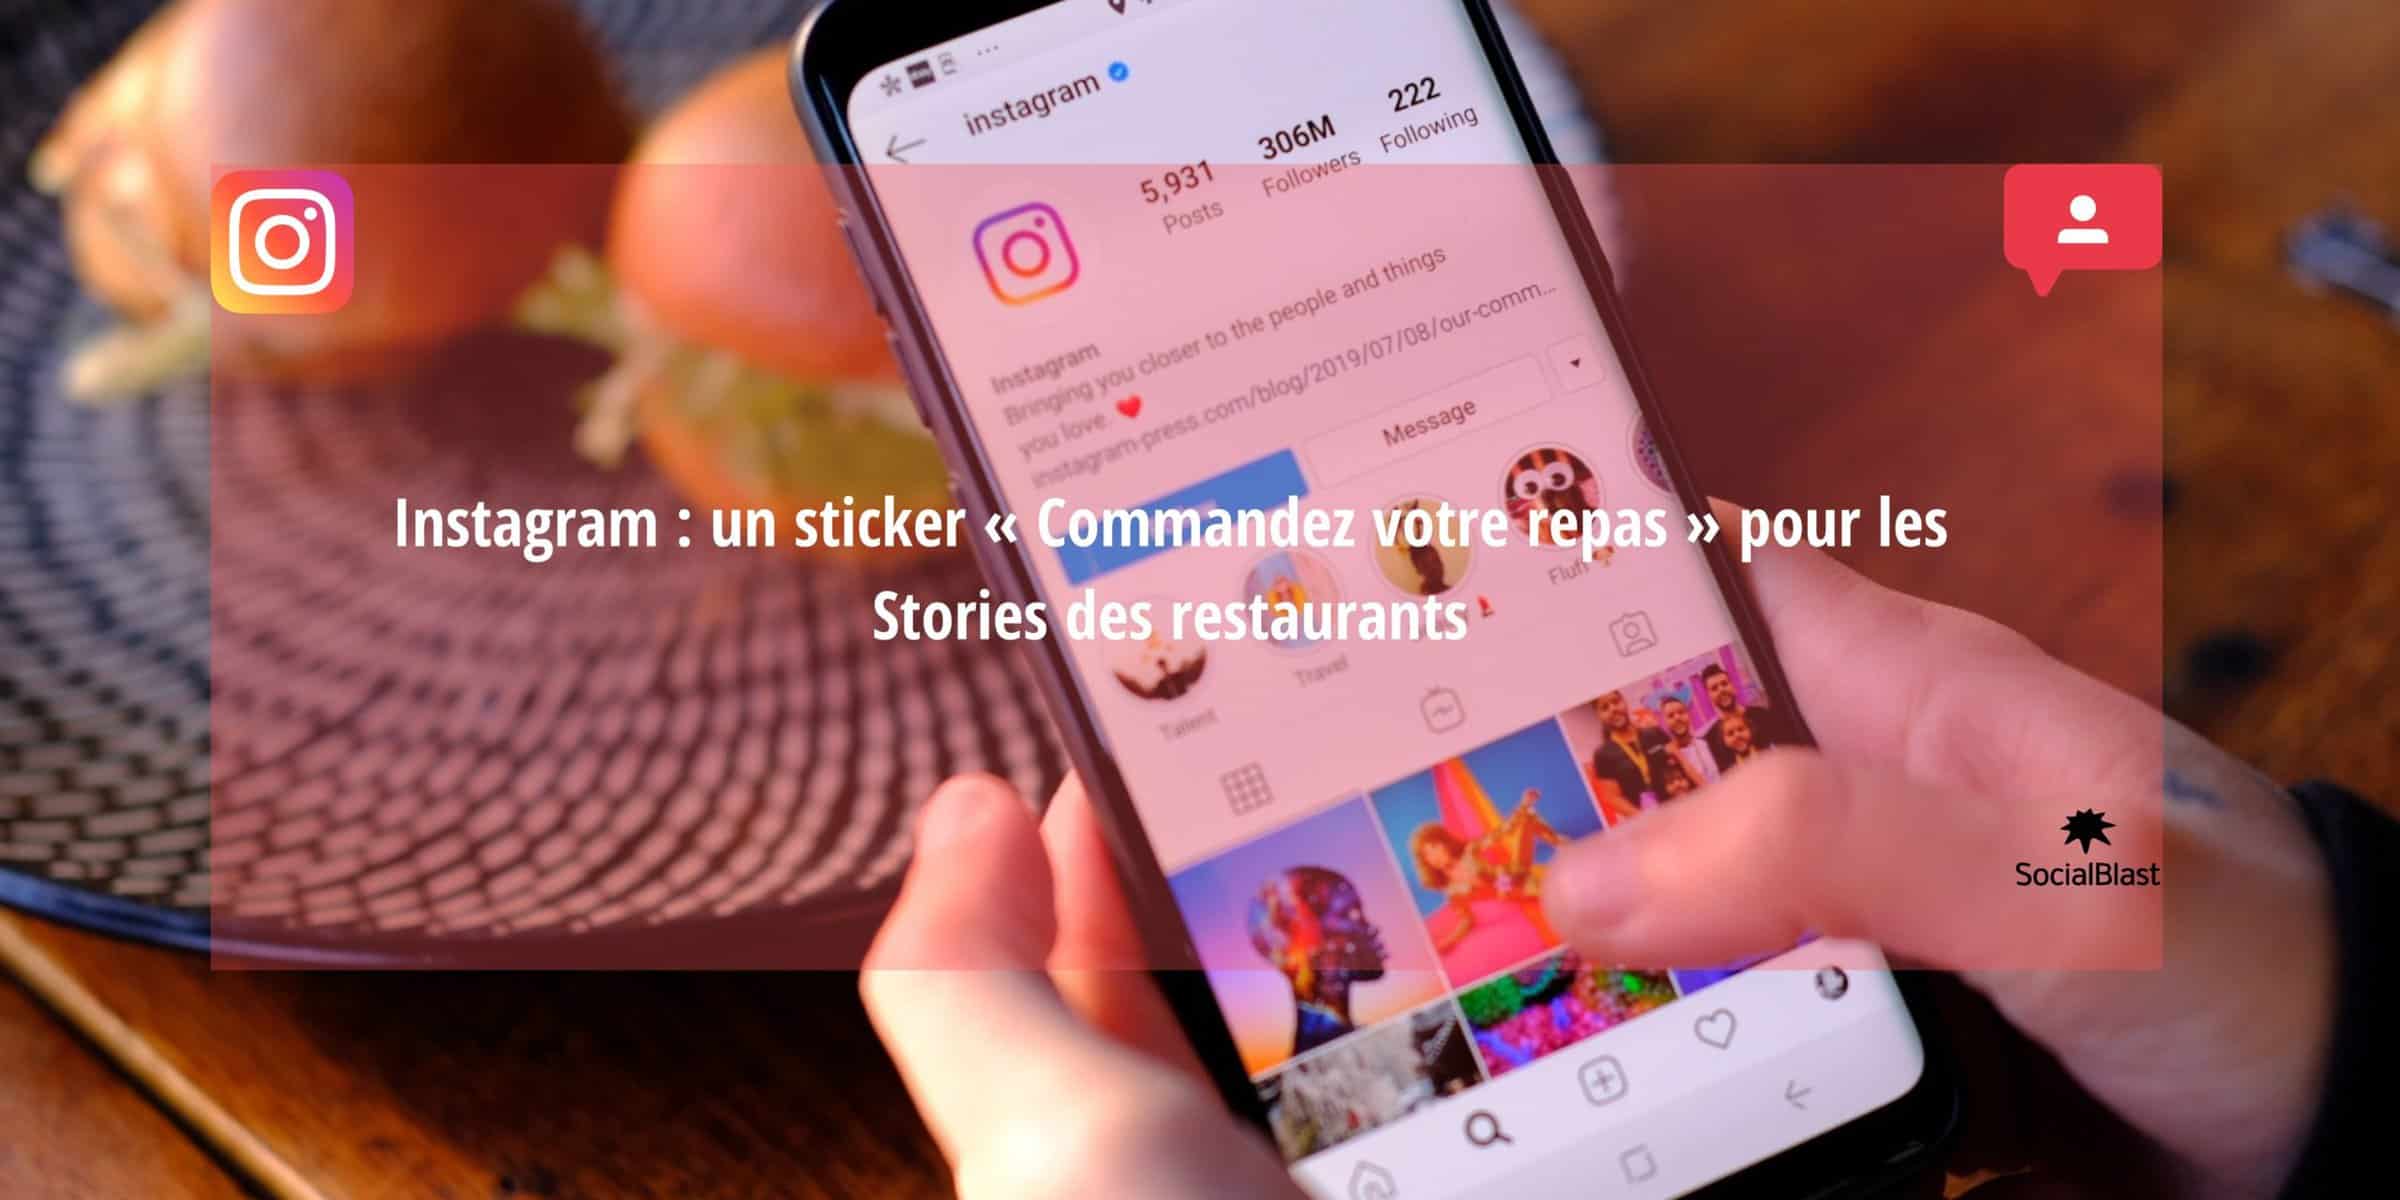 Instagram per promuovere il vostro ristorante